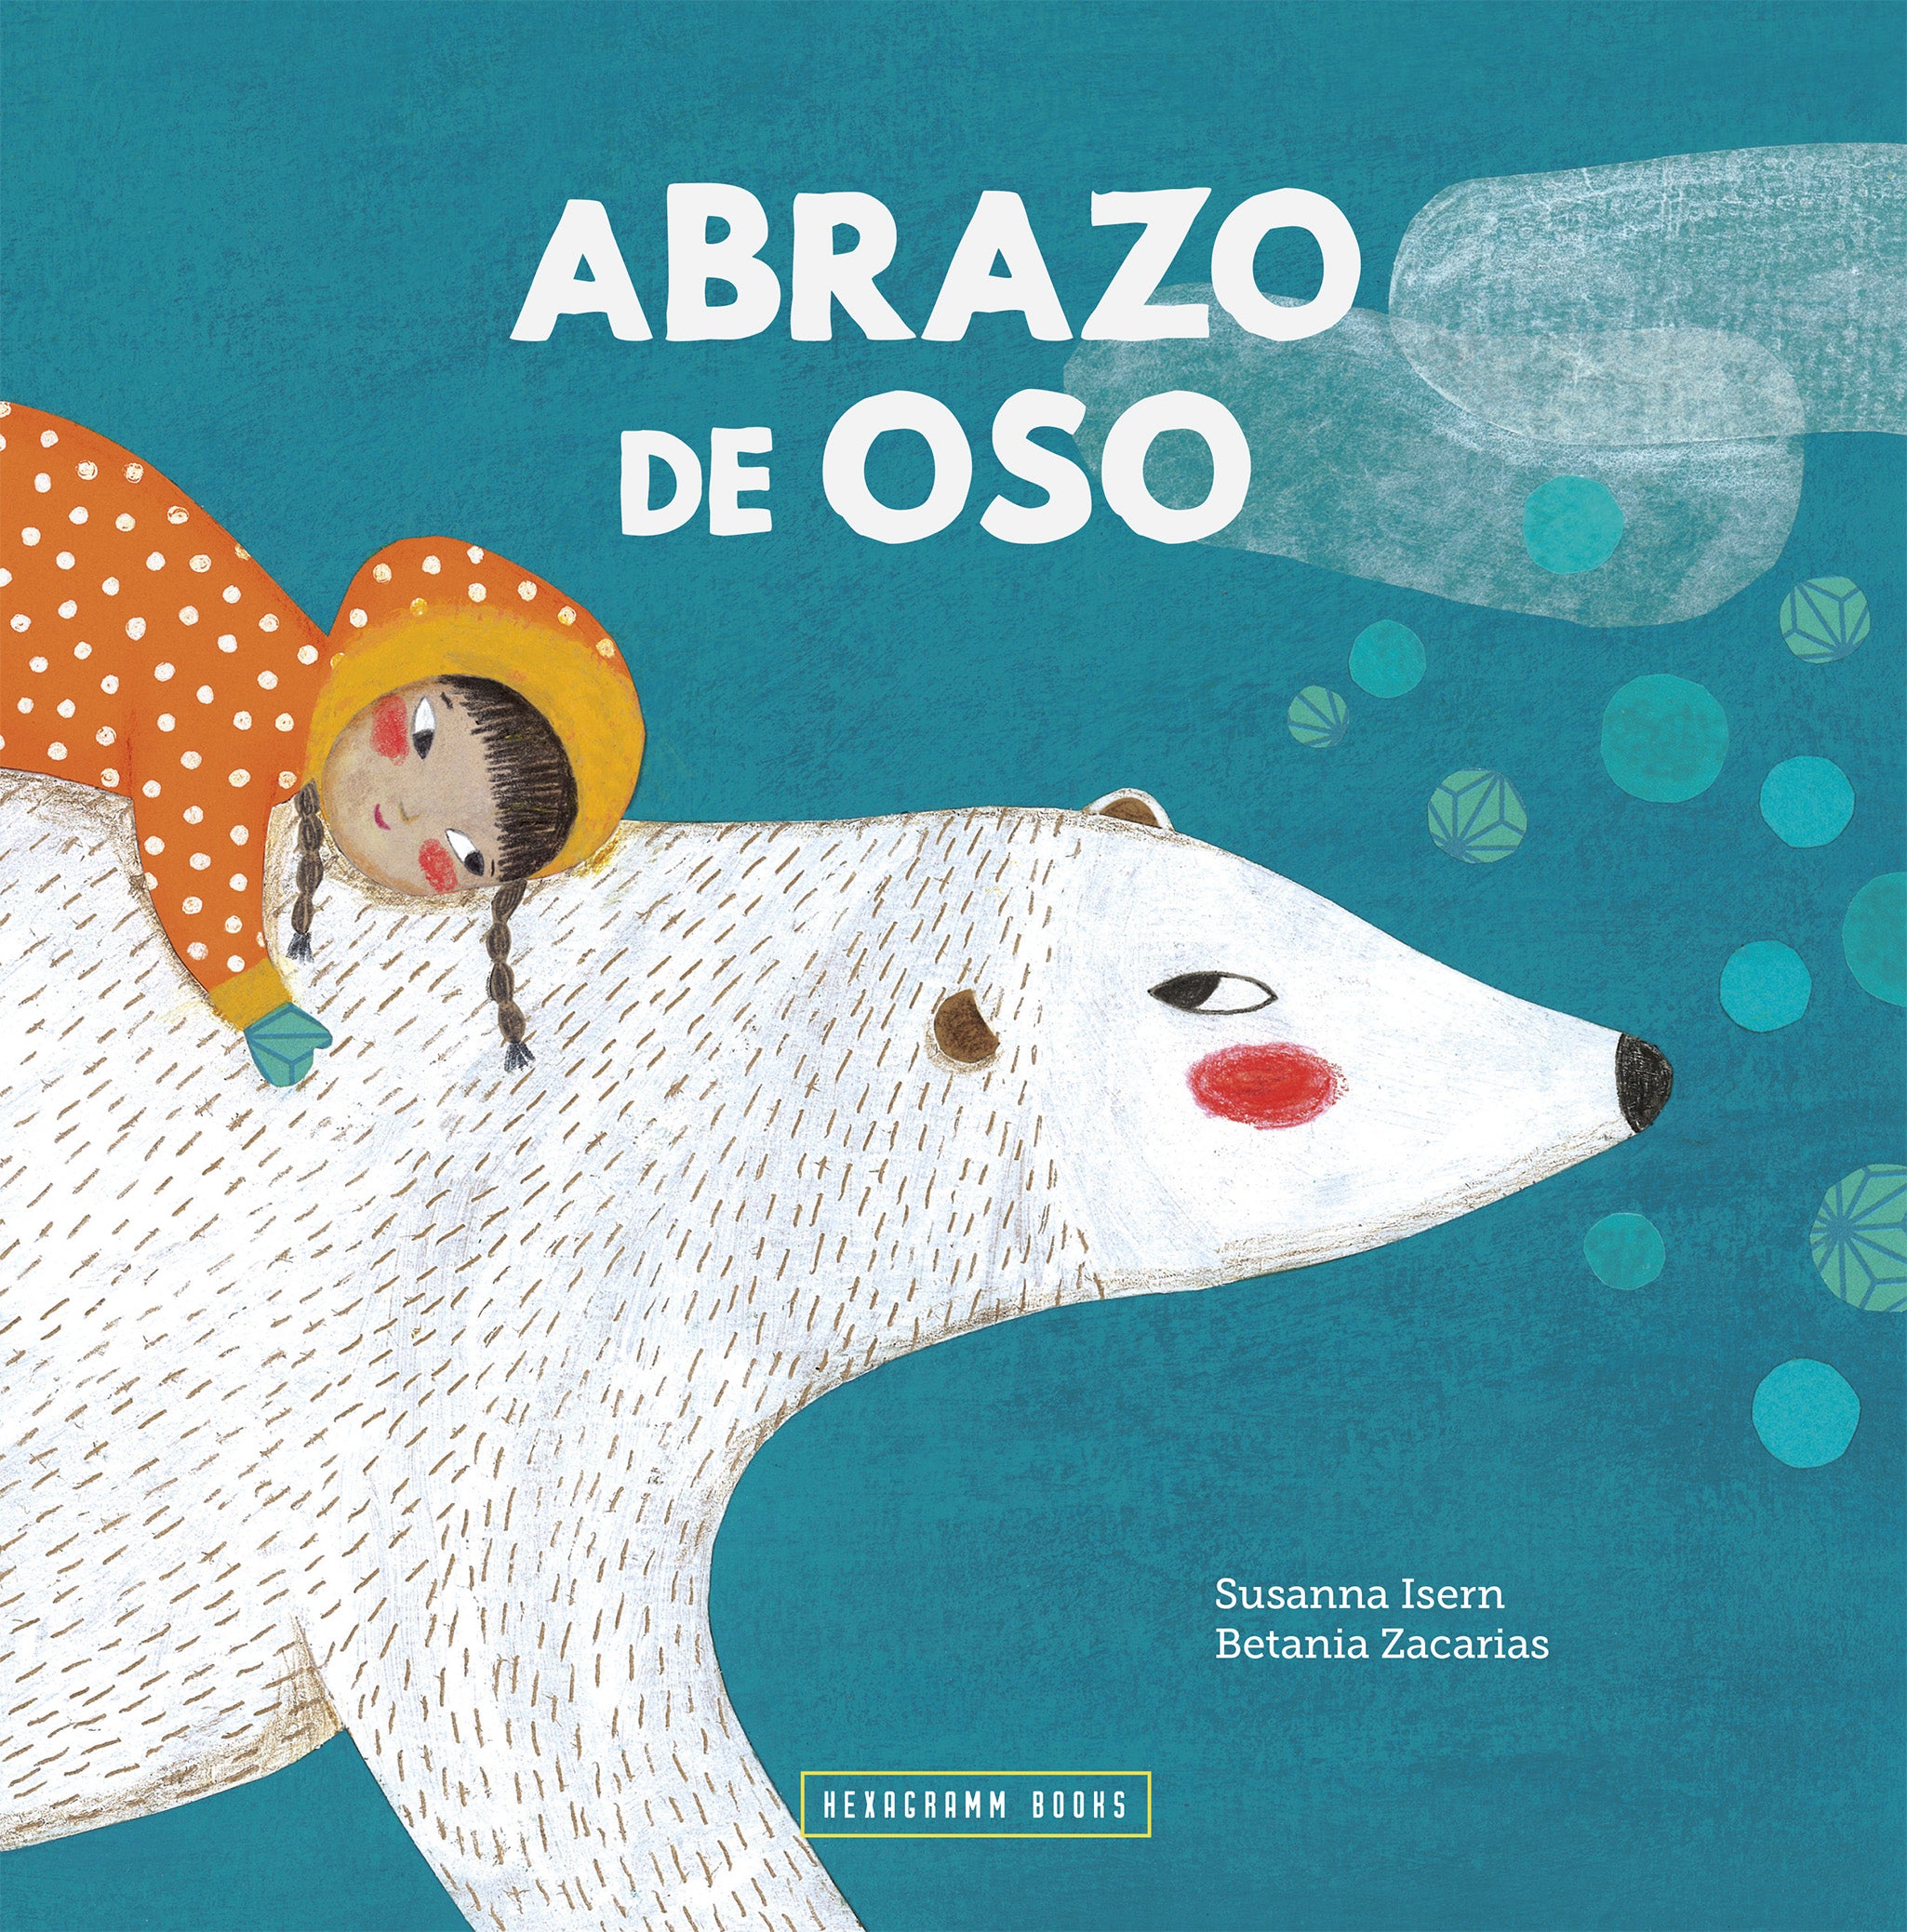 Abrazo de oso (paperback) - Book Club Fantasy/SciFi Set of 6